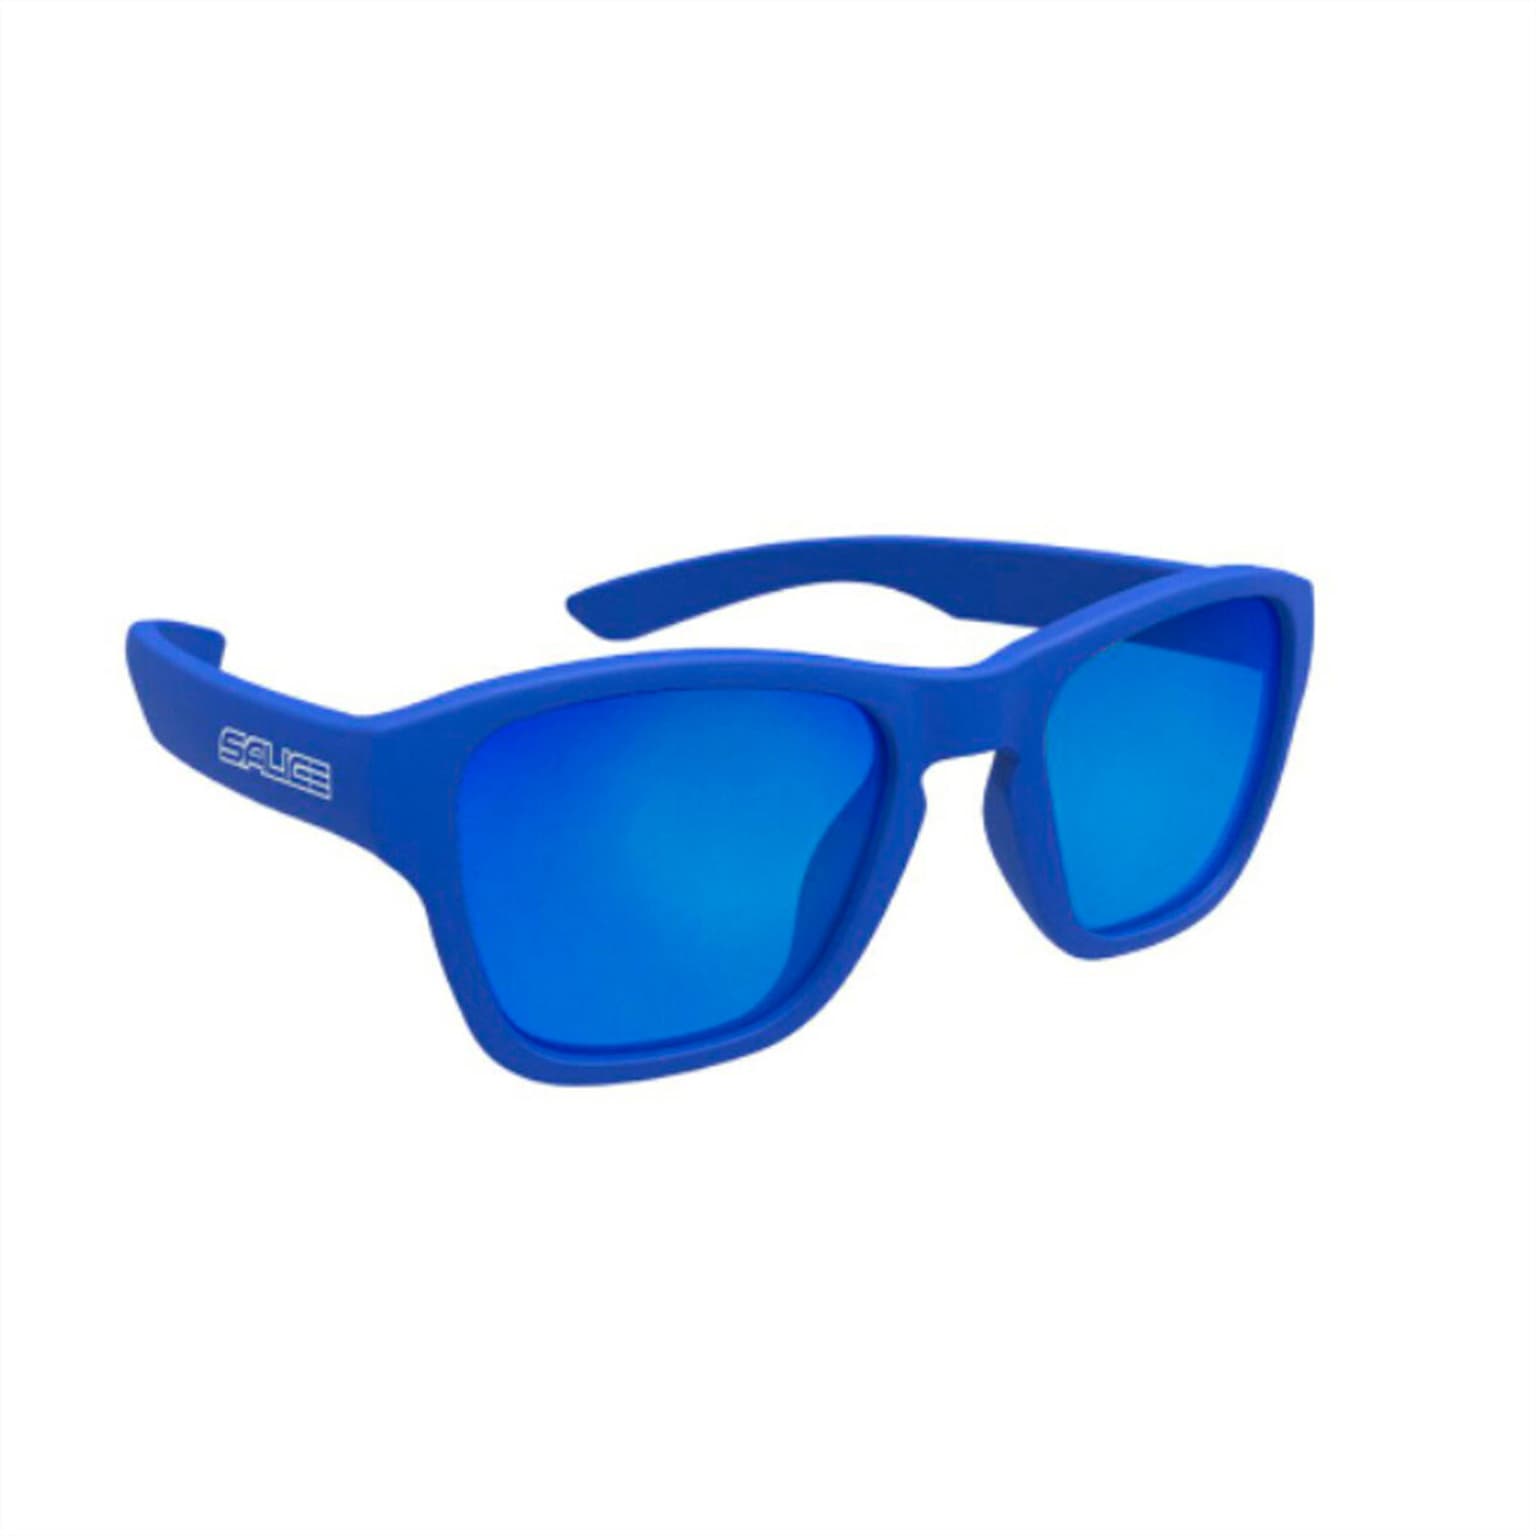 Salice Salice 163RW Sportbrille blu-reale 1